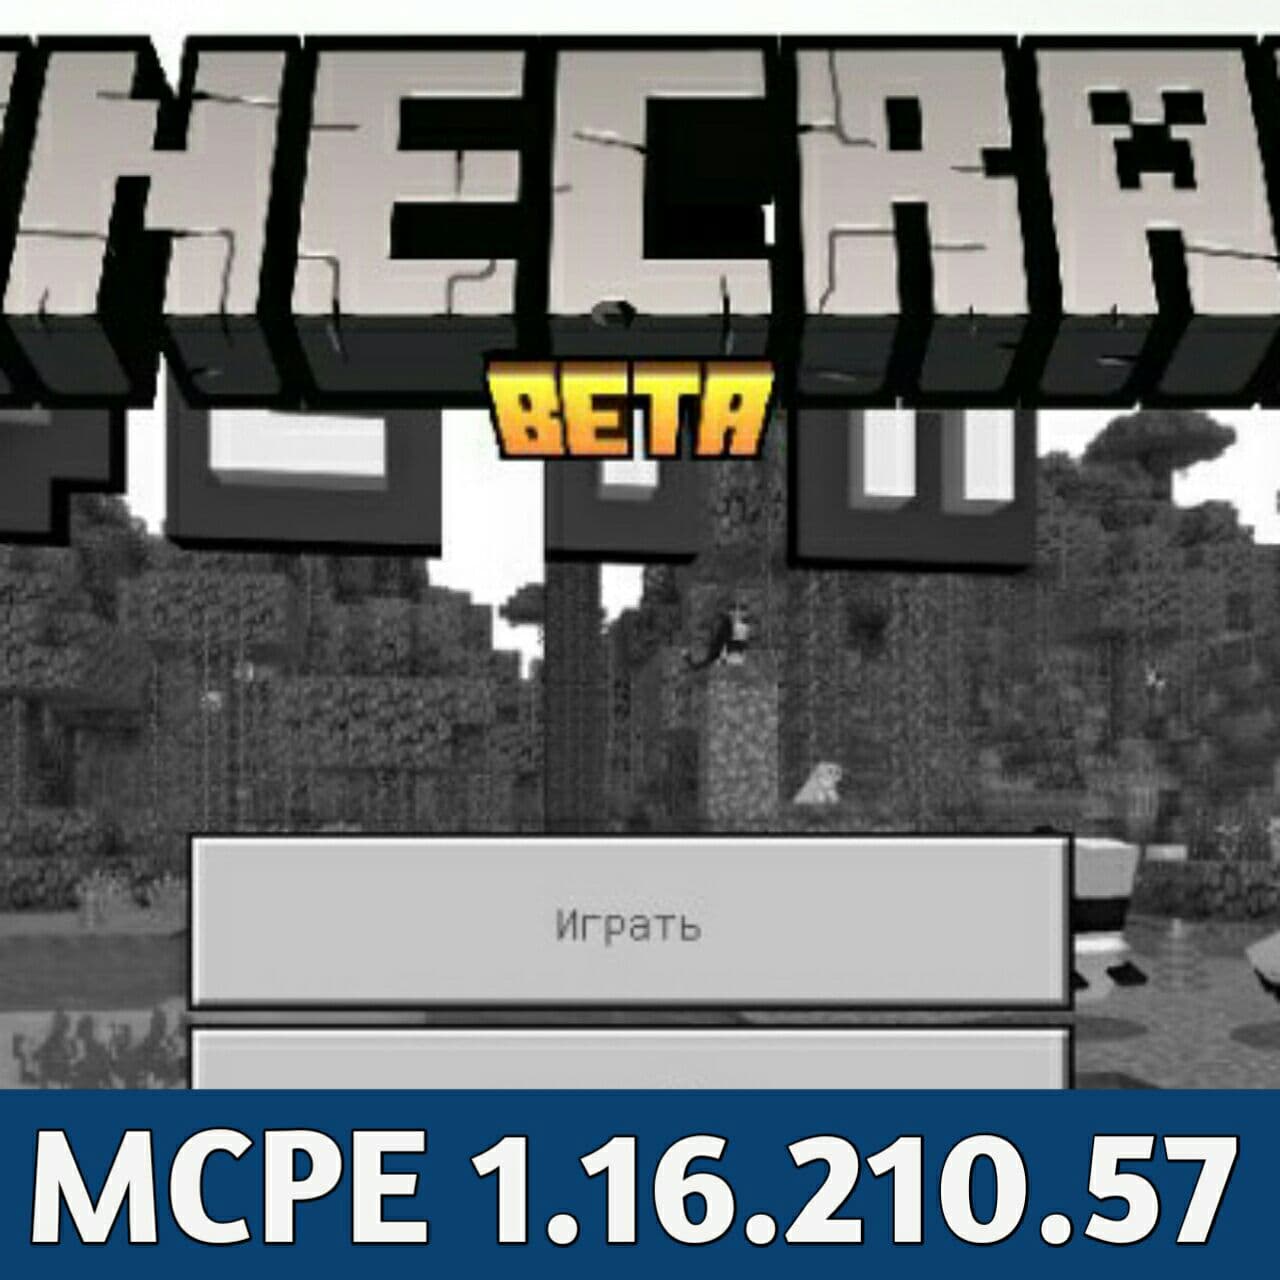 Minecraft Beta - Download